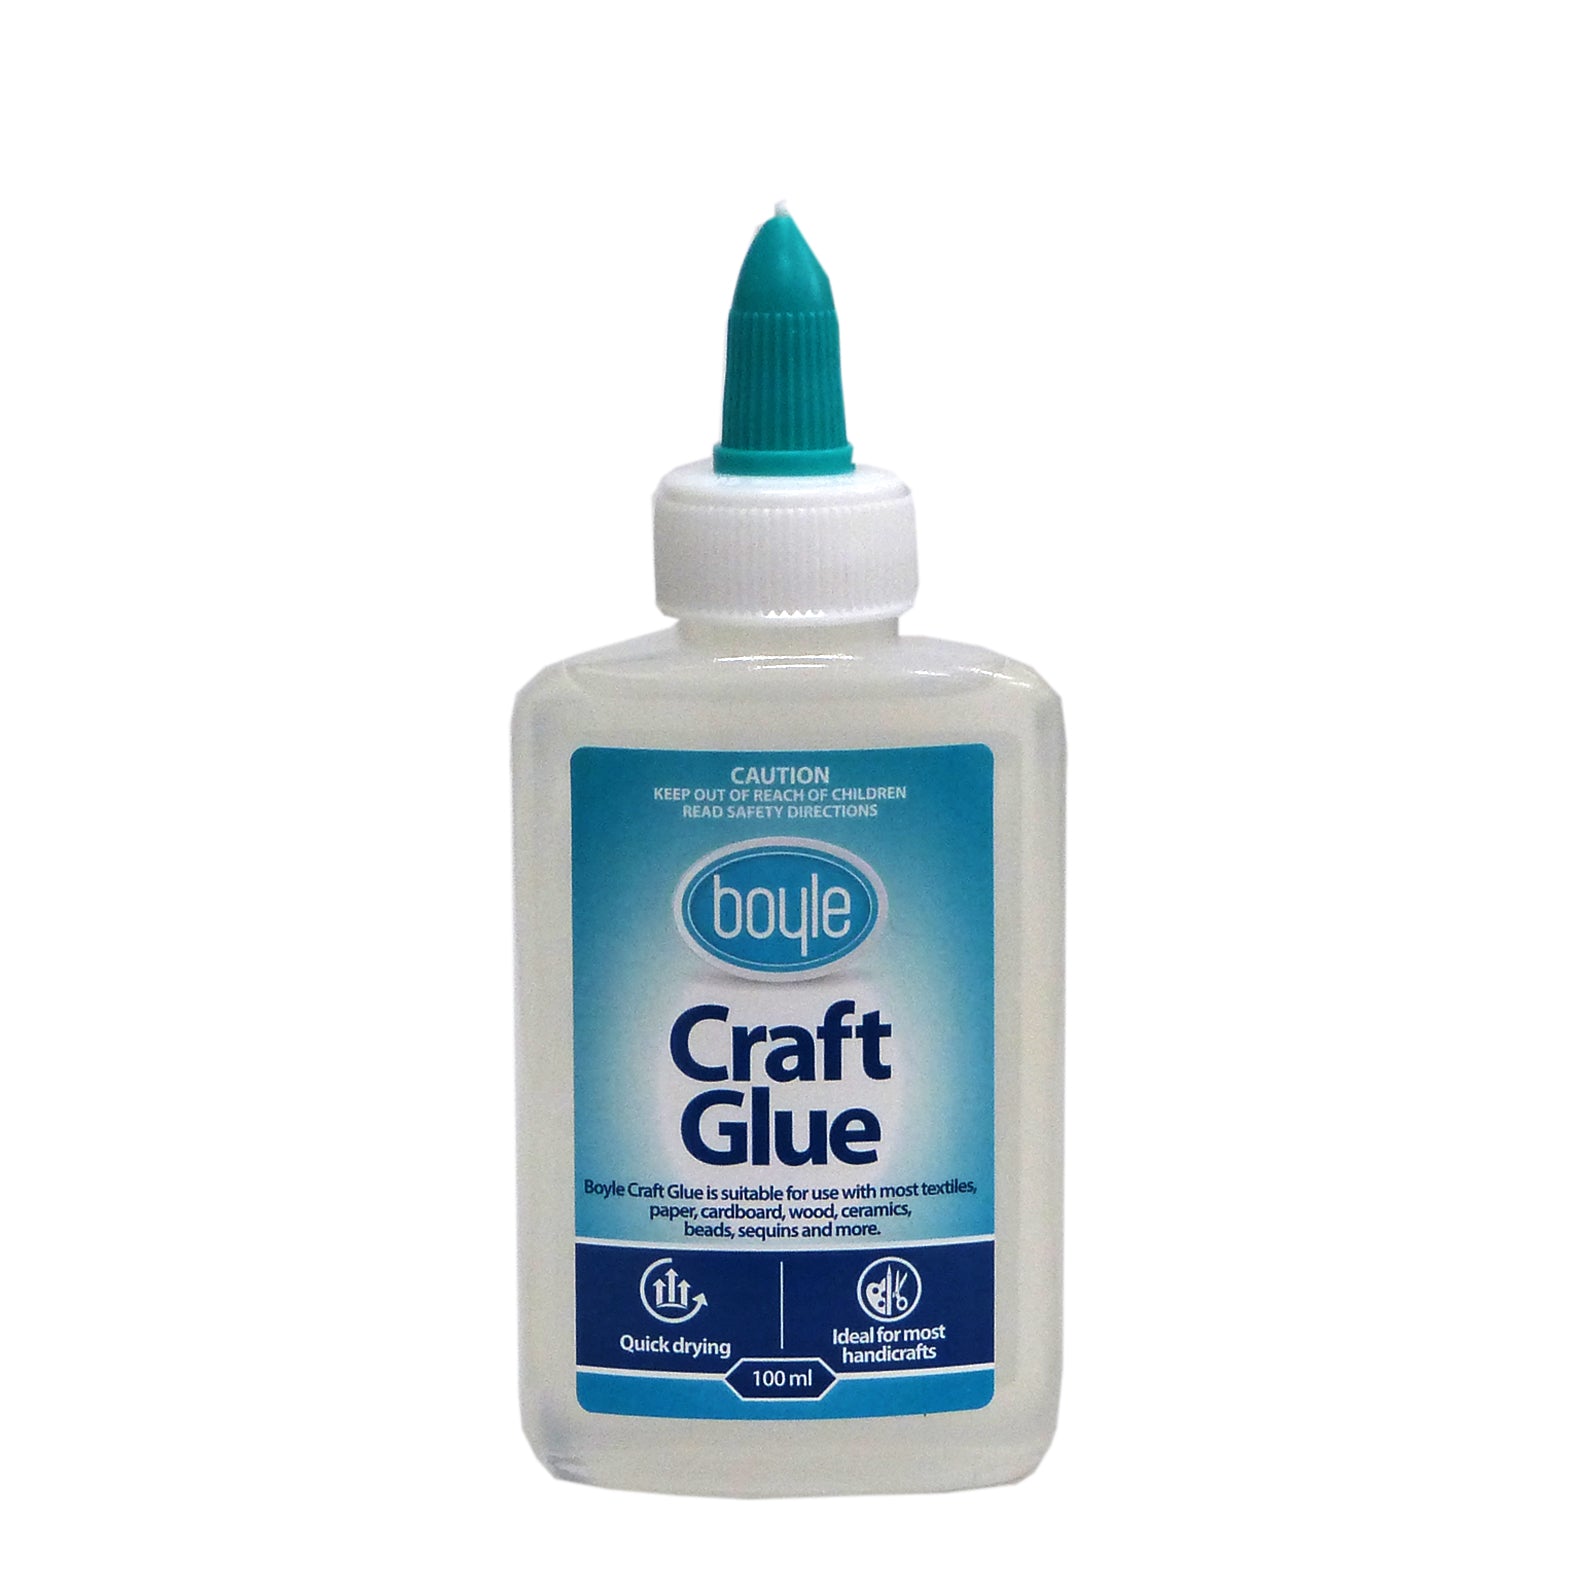 Boyle Craft Glue 100ml